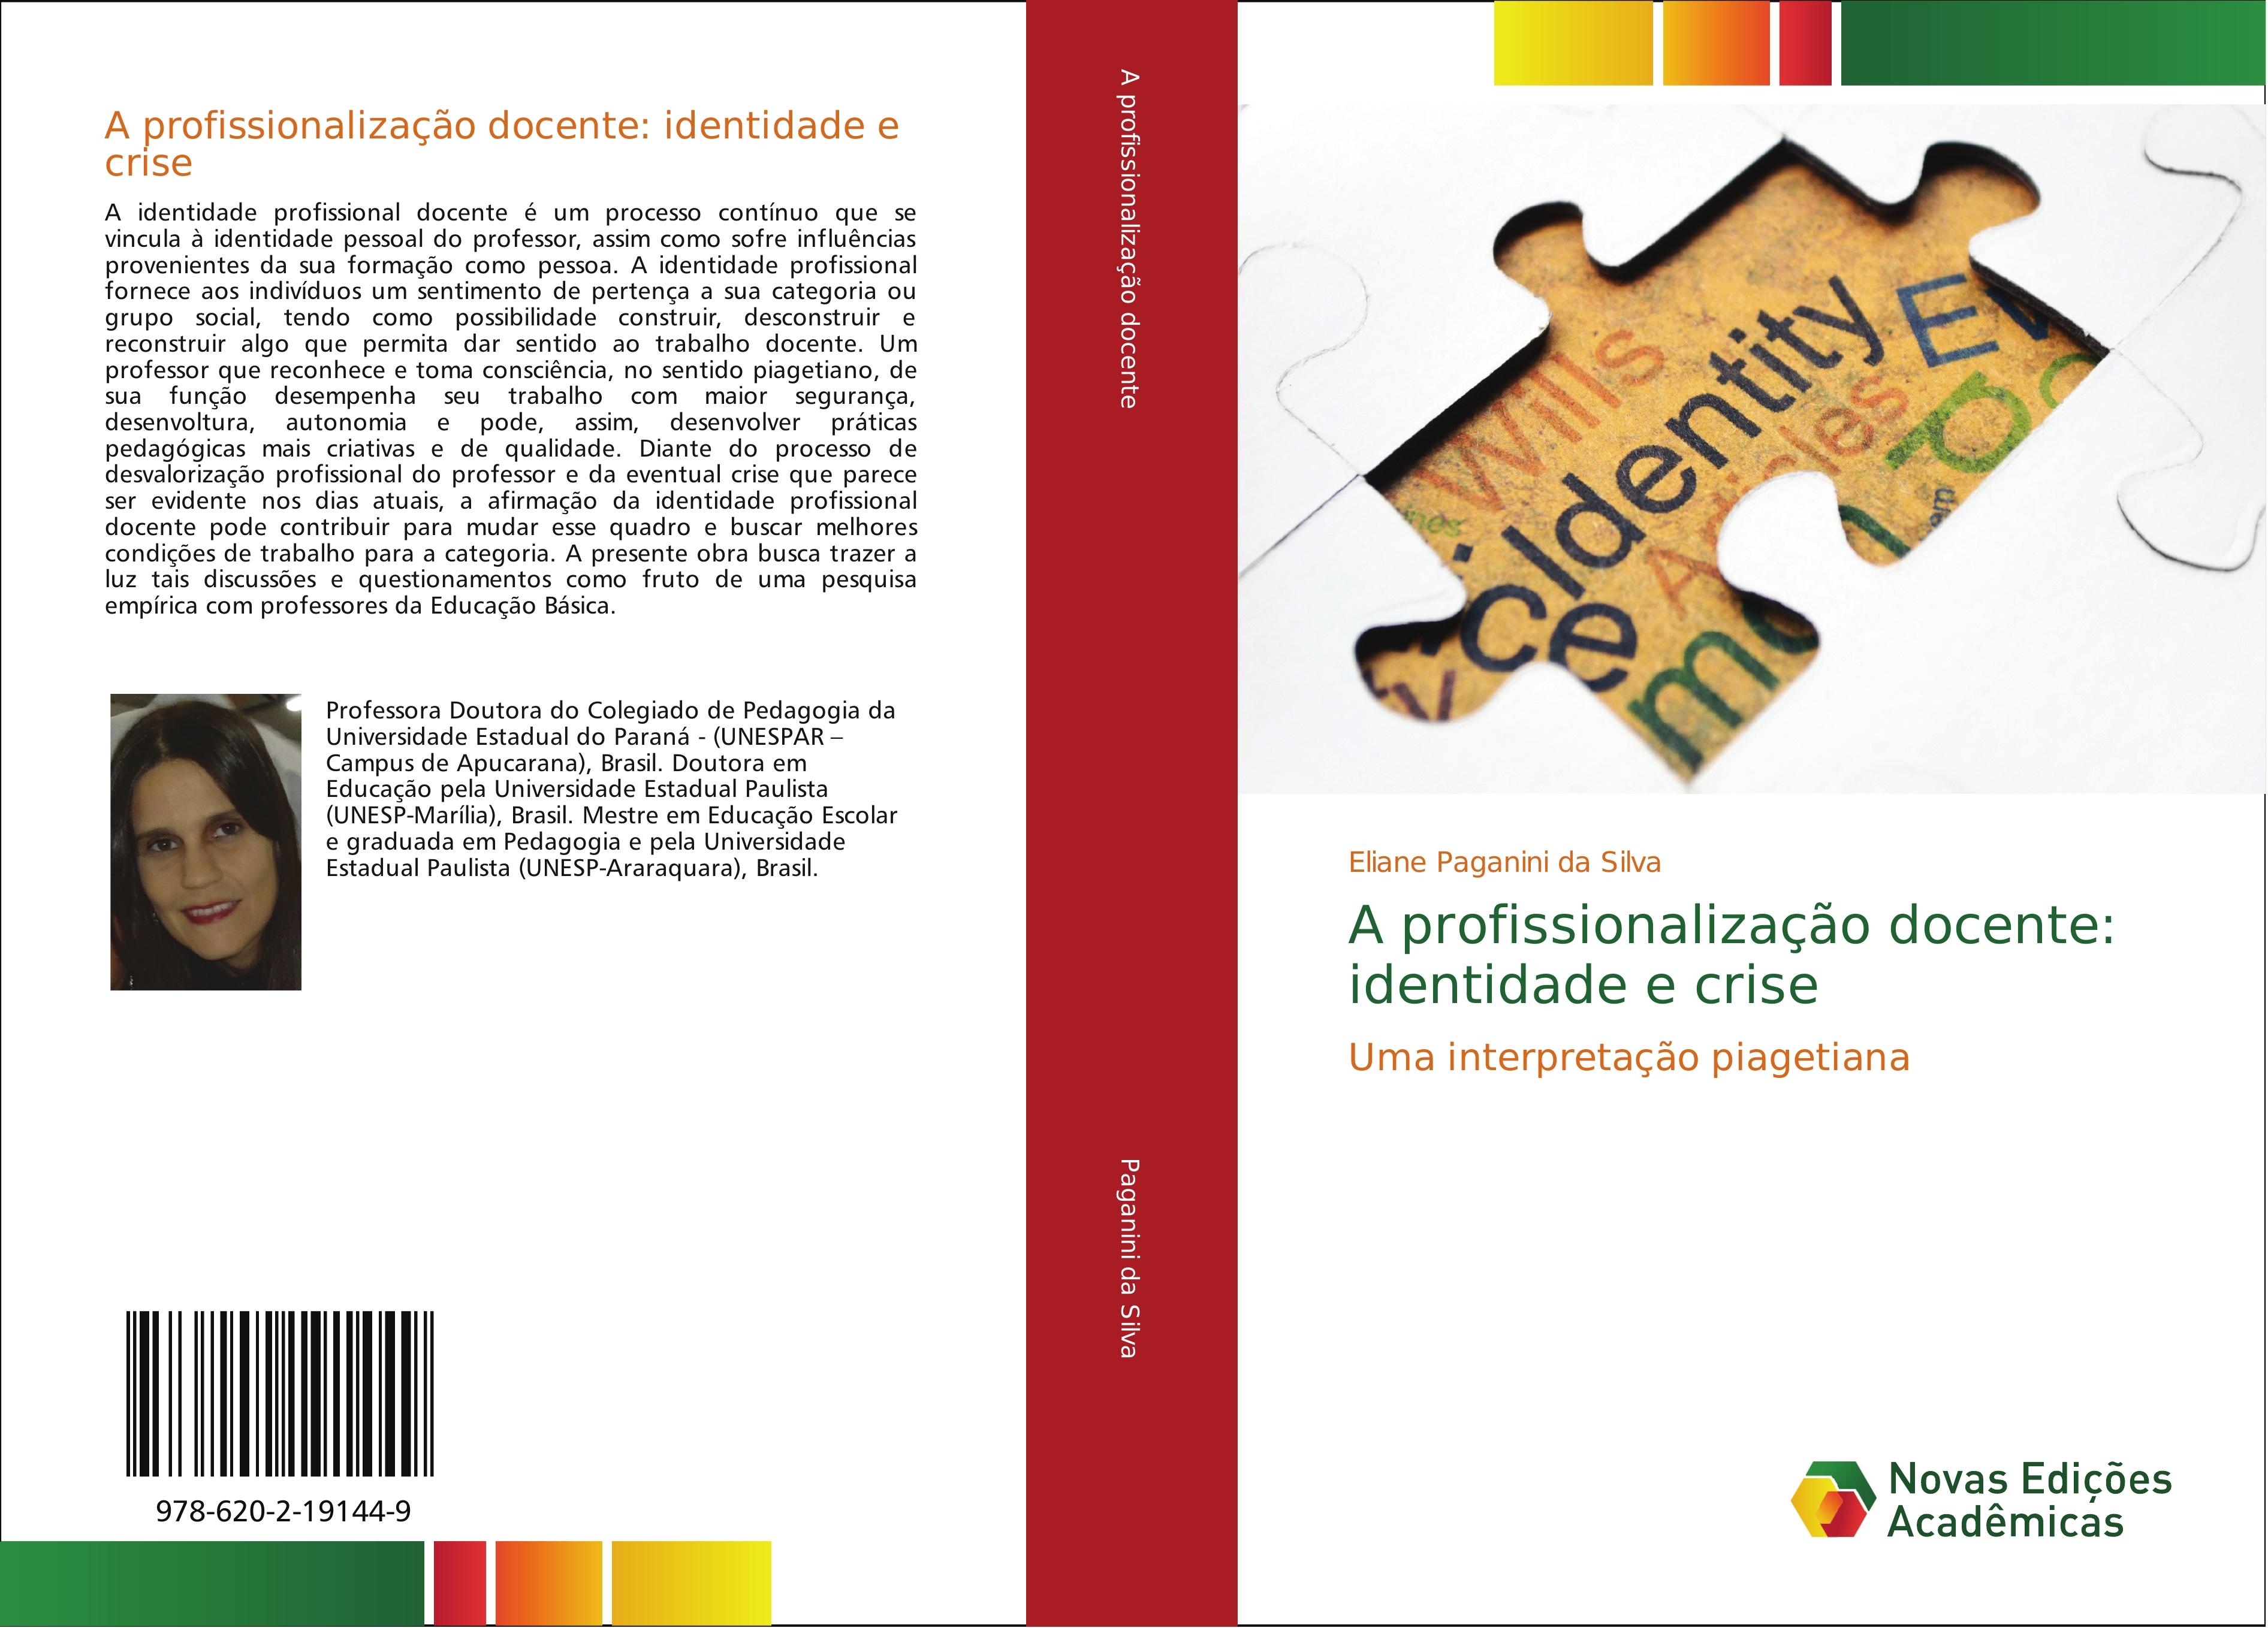 A profissionalização docente: identidade e crise - Eliane Paganini da Silva